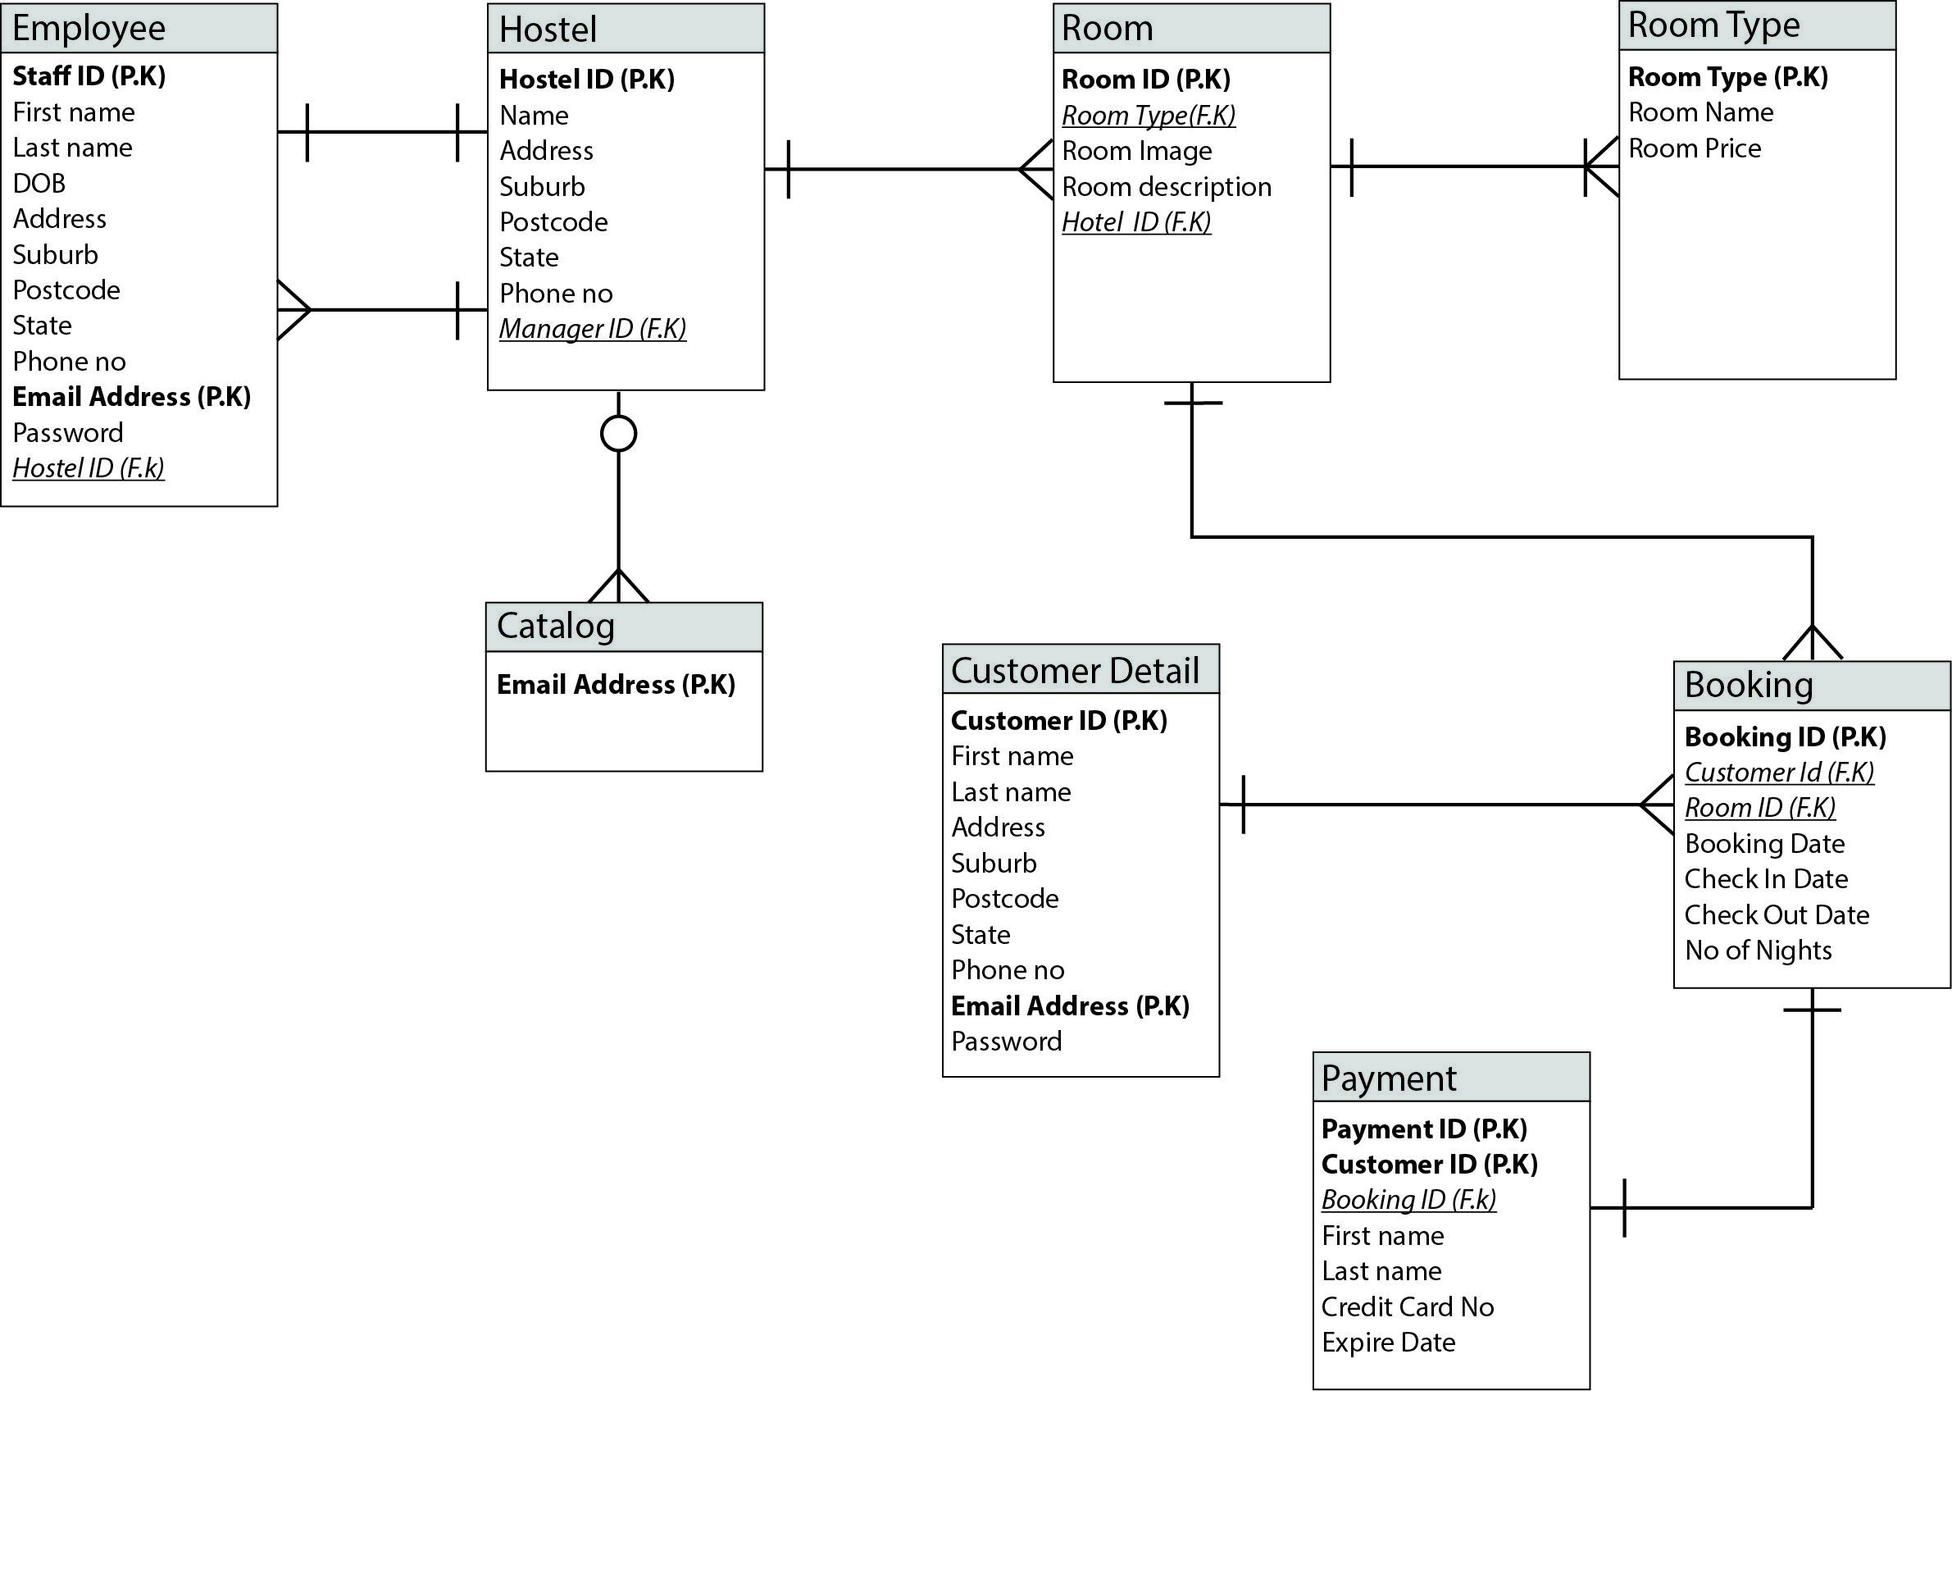 Online Hostel Management System Er Diagram - Database regarding Er Diagram F